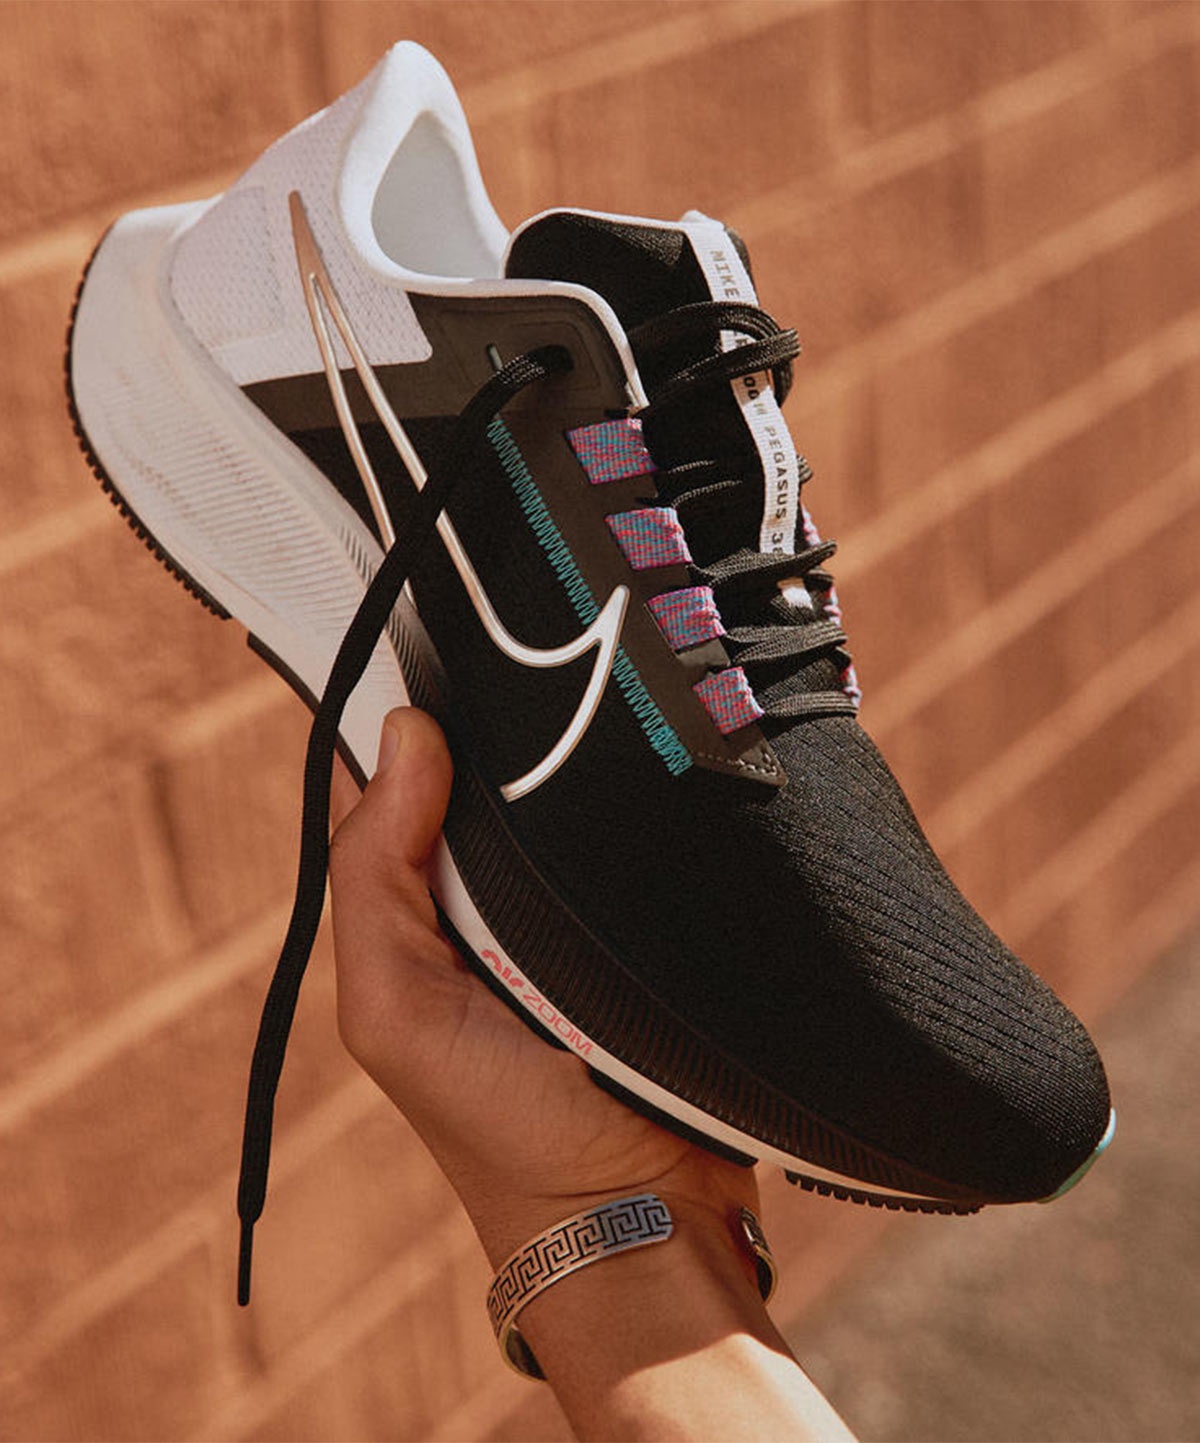 Nike Pegasus características y - Zapatillas | Runnea